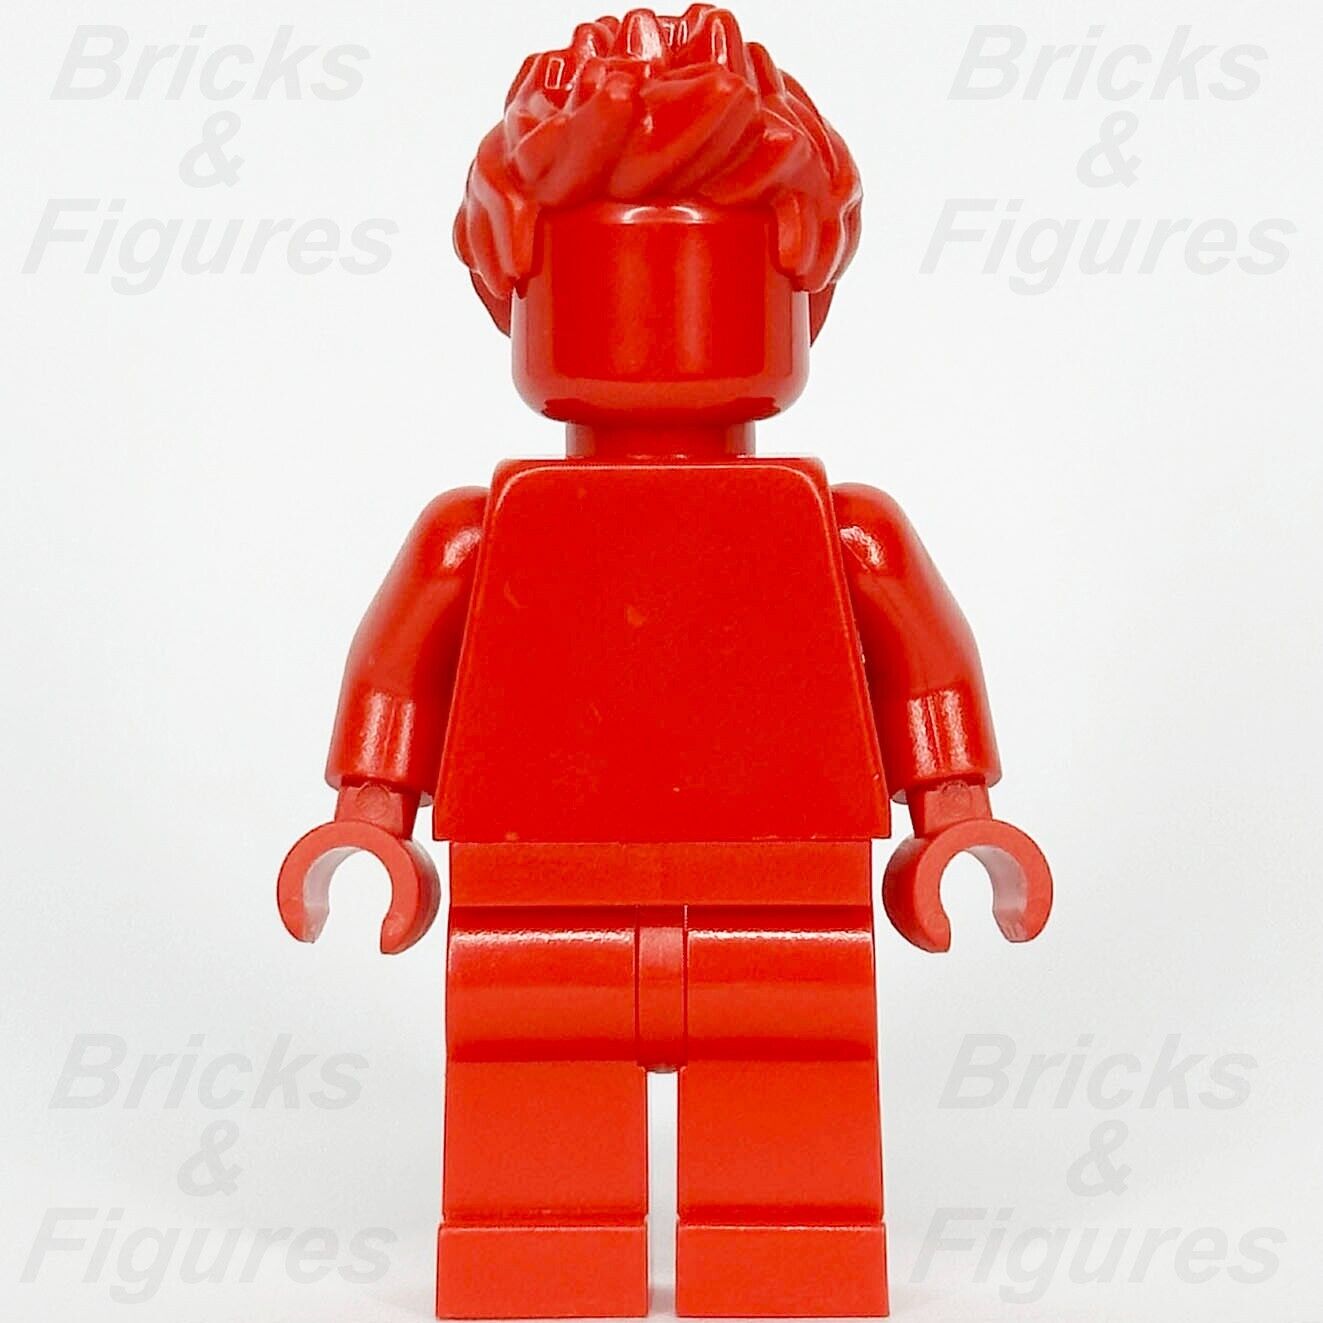 レゴ みんなすごい レッド ミニフィギュア モノクロ 40516 ミニフィグ